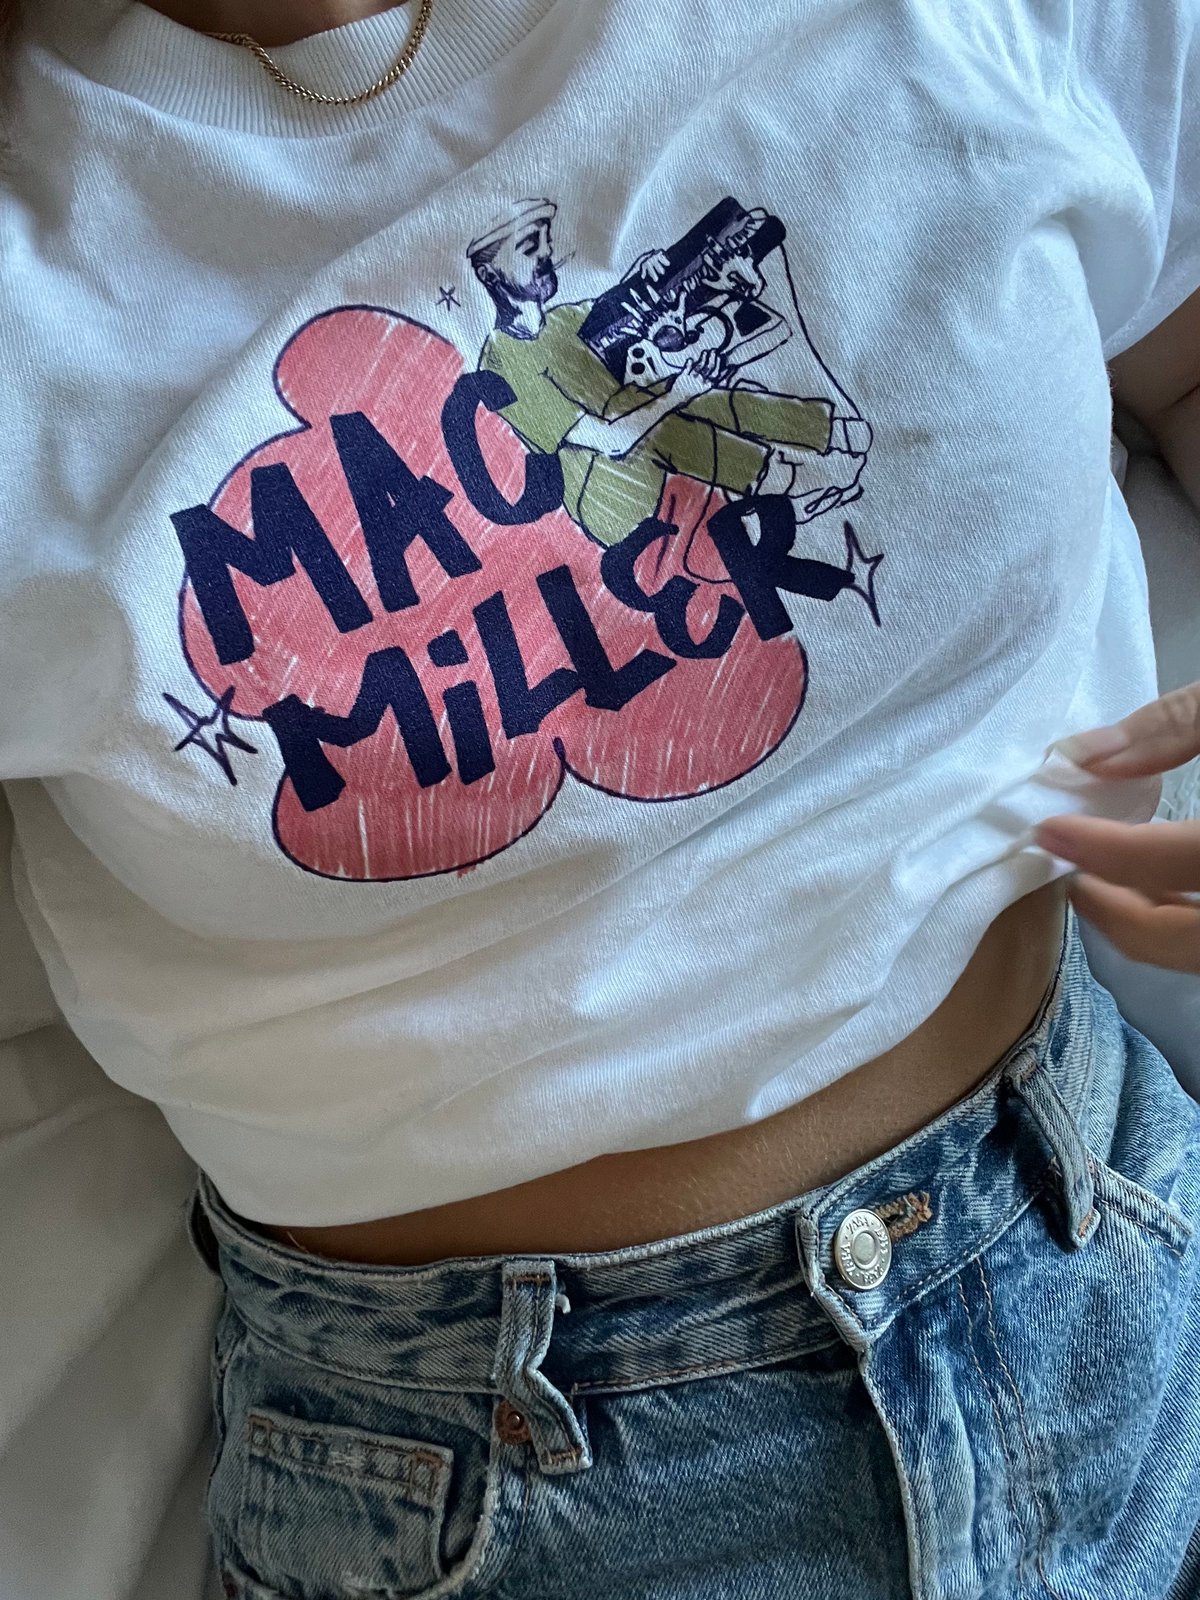 mac miller shirt